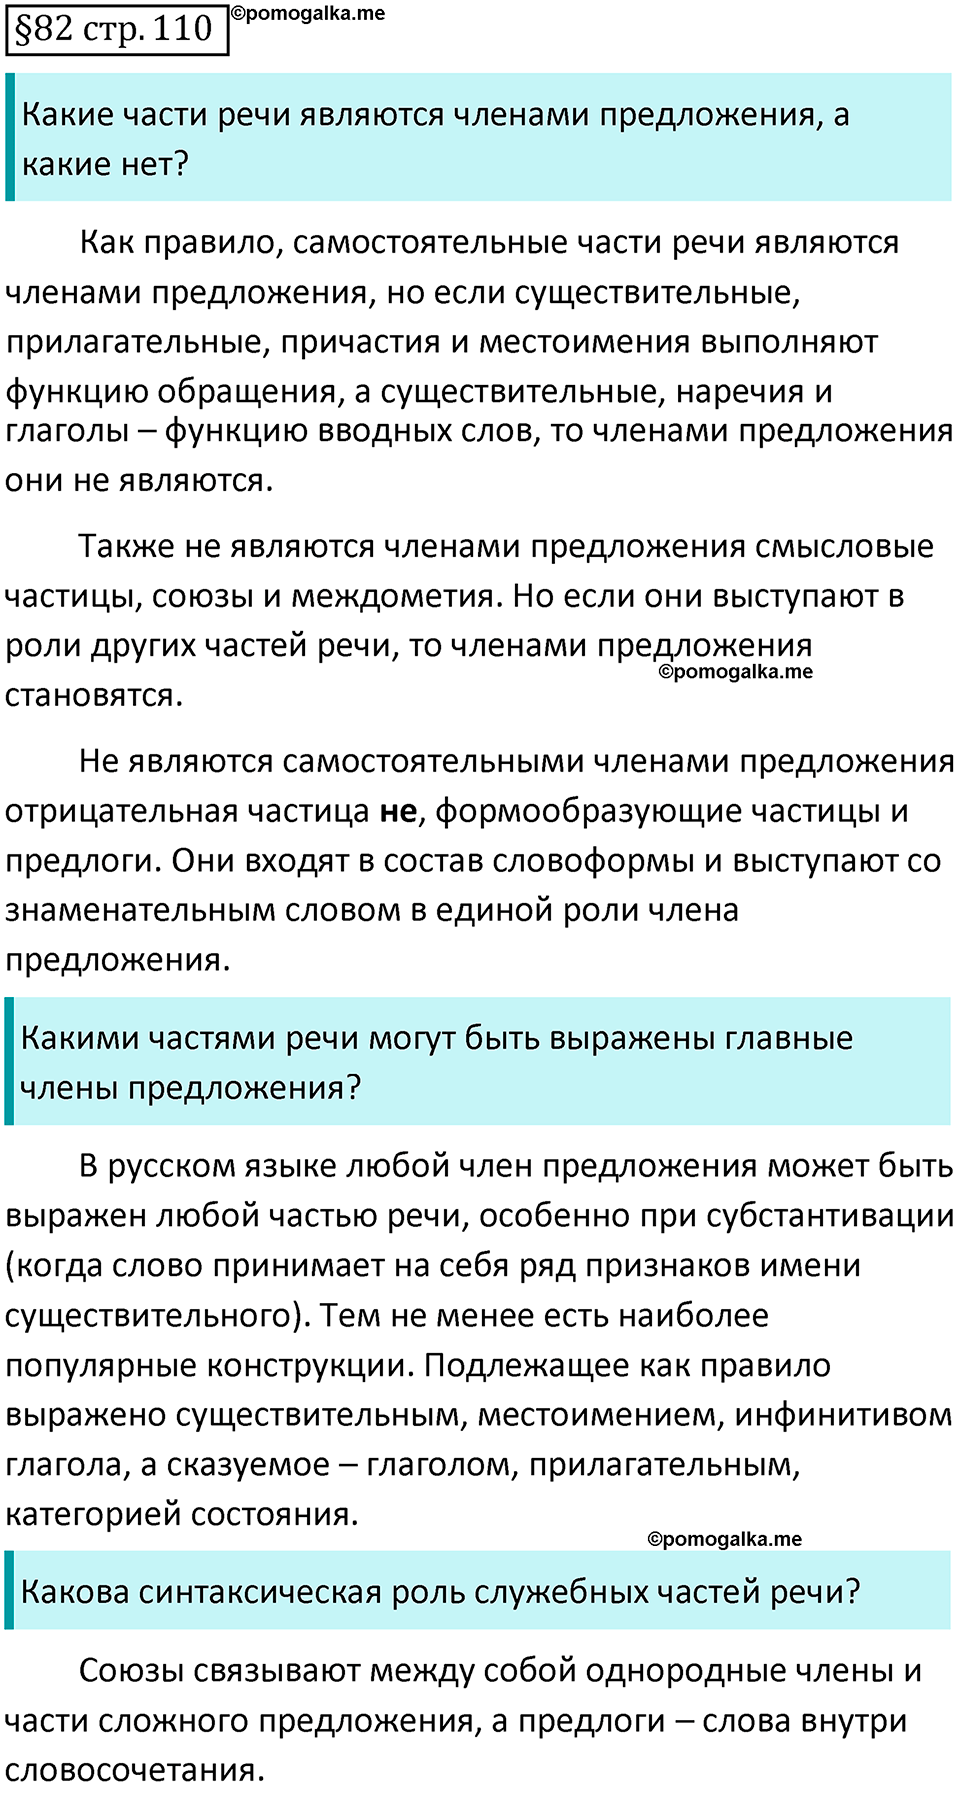 страница 110 вопросы к §82 русский язык 7 класс Баранов, Ладыженская 2021-2022 год